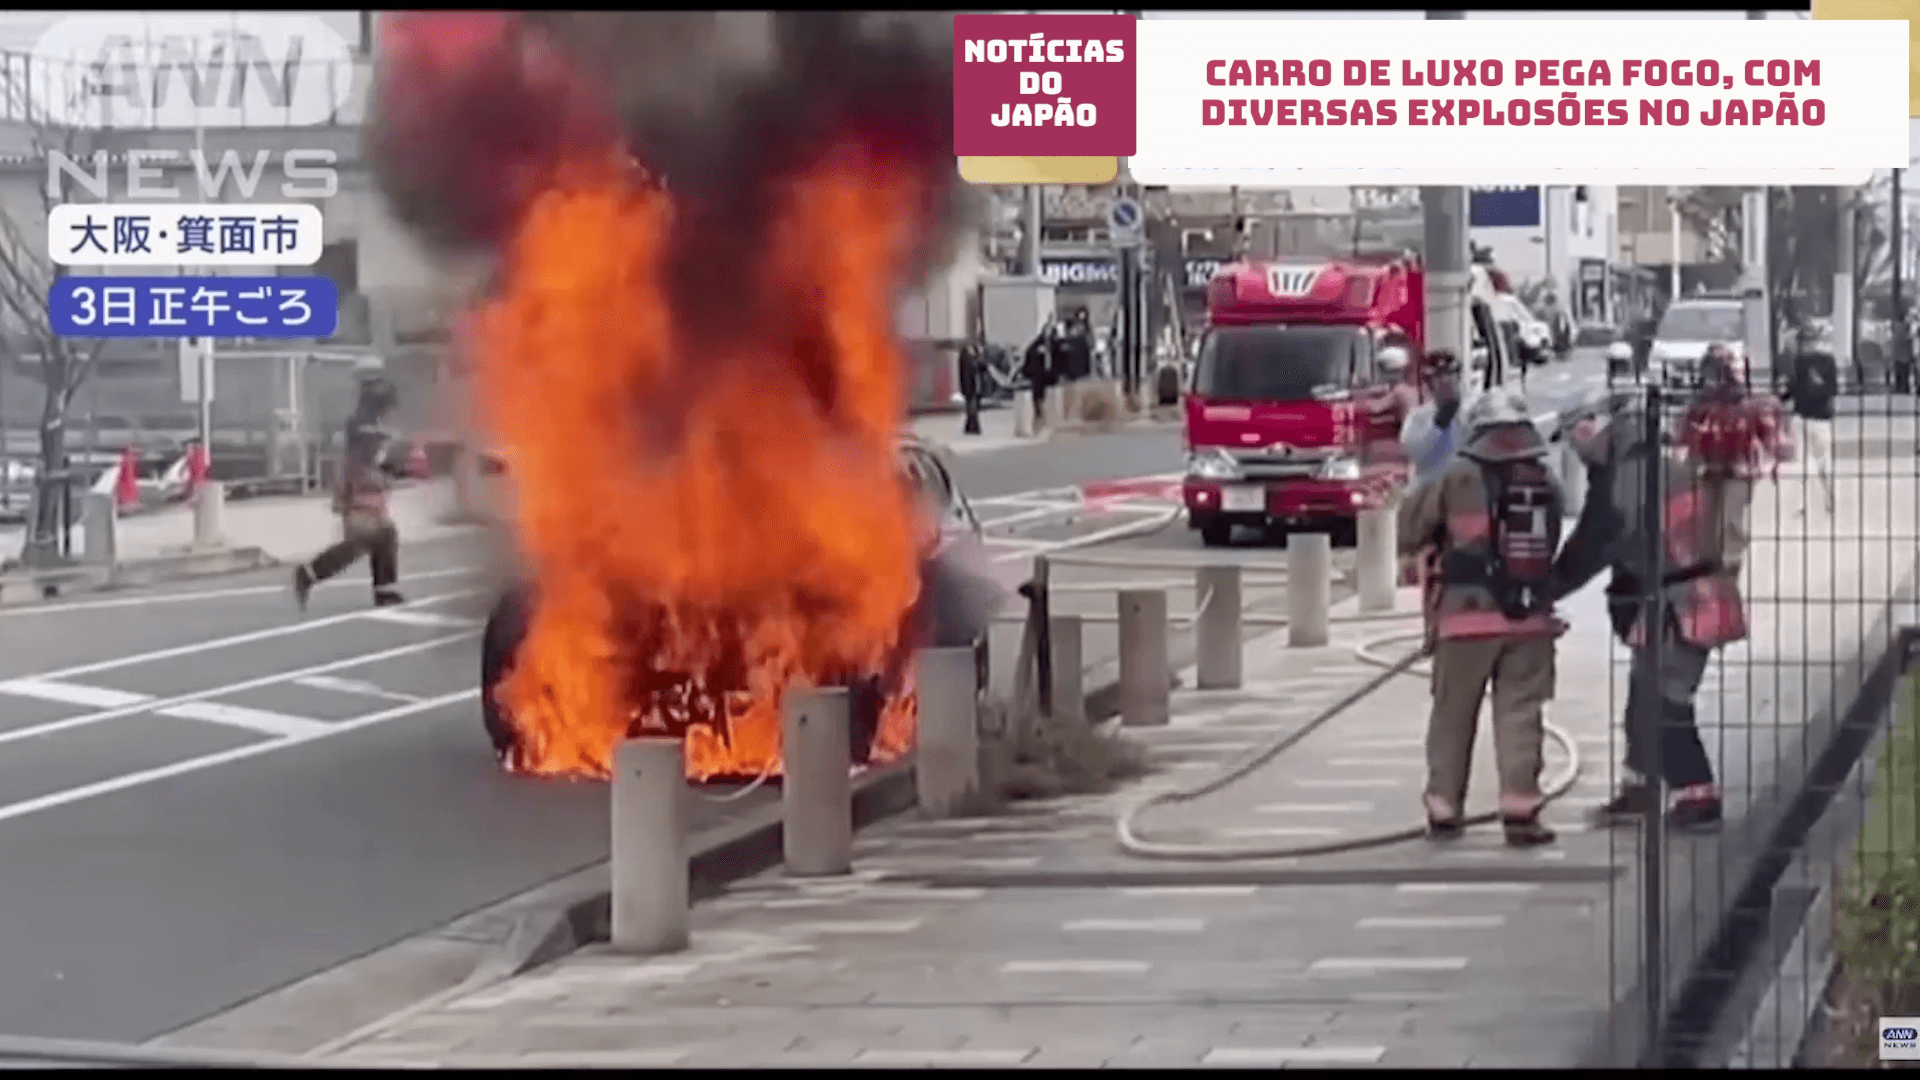 Carro de luxo pega fogo, com diversas explosões no Japão 